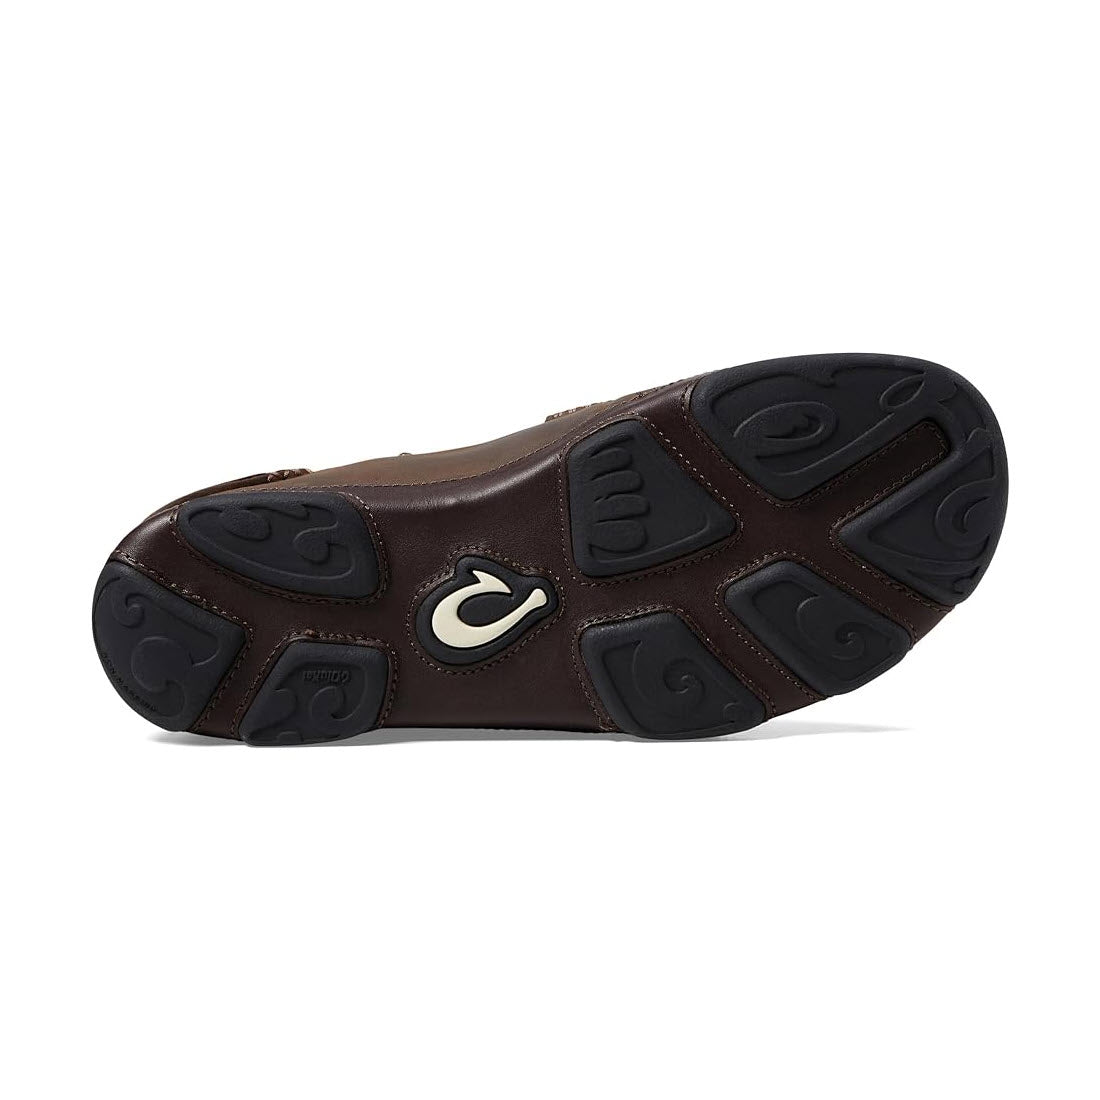 Sole of a men&#39;s Olukai Moloa slip-on casual shoe with visible Olukai logo.